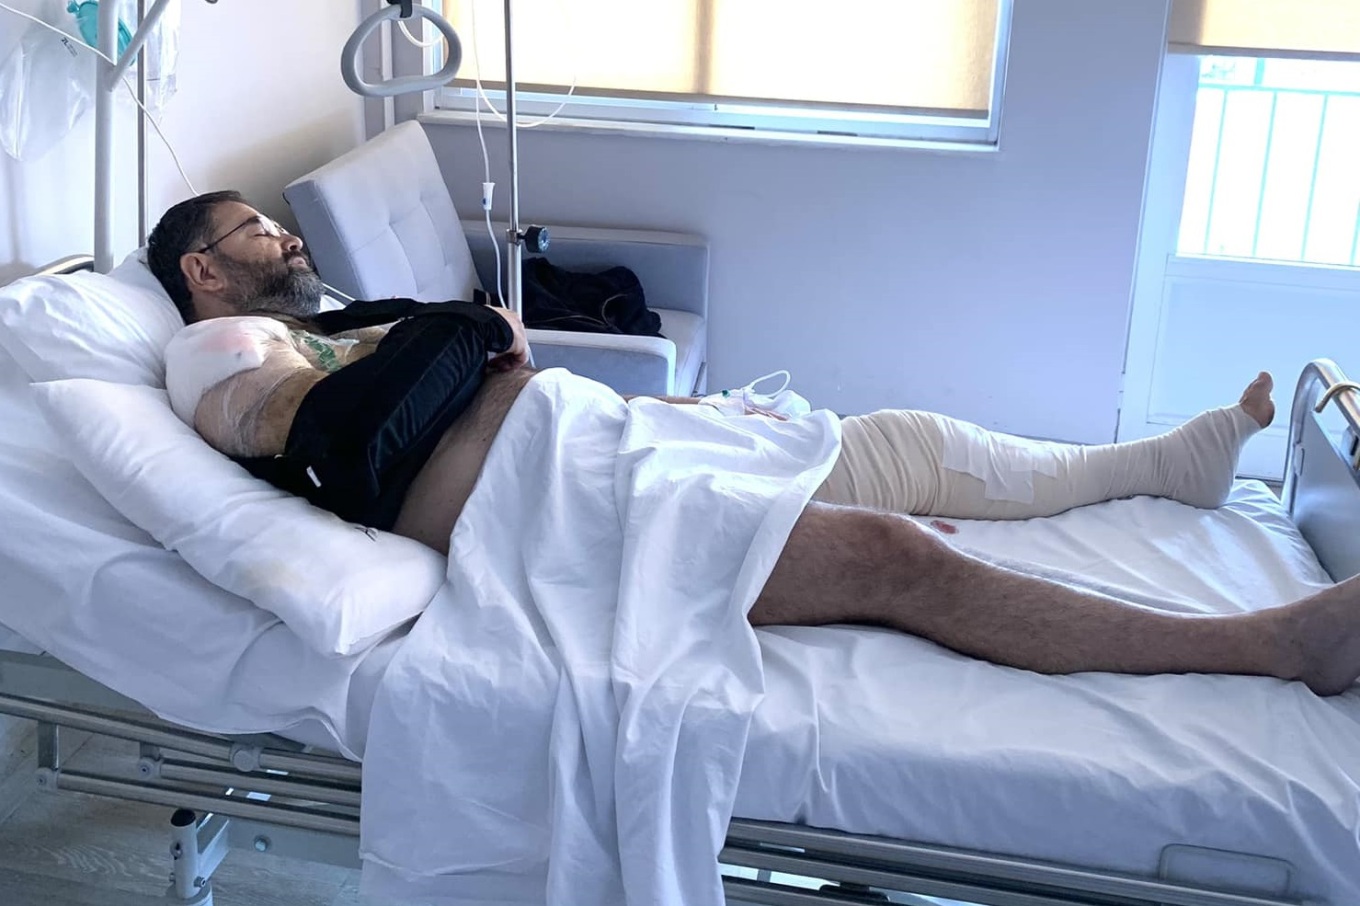 Σταύρος Μπαλάσκας: Η φωτογραφία του μέσα από το νοσοκομείο - «Όλα ΚΑΤ ευχήν»